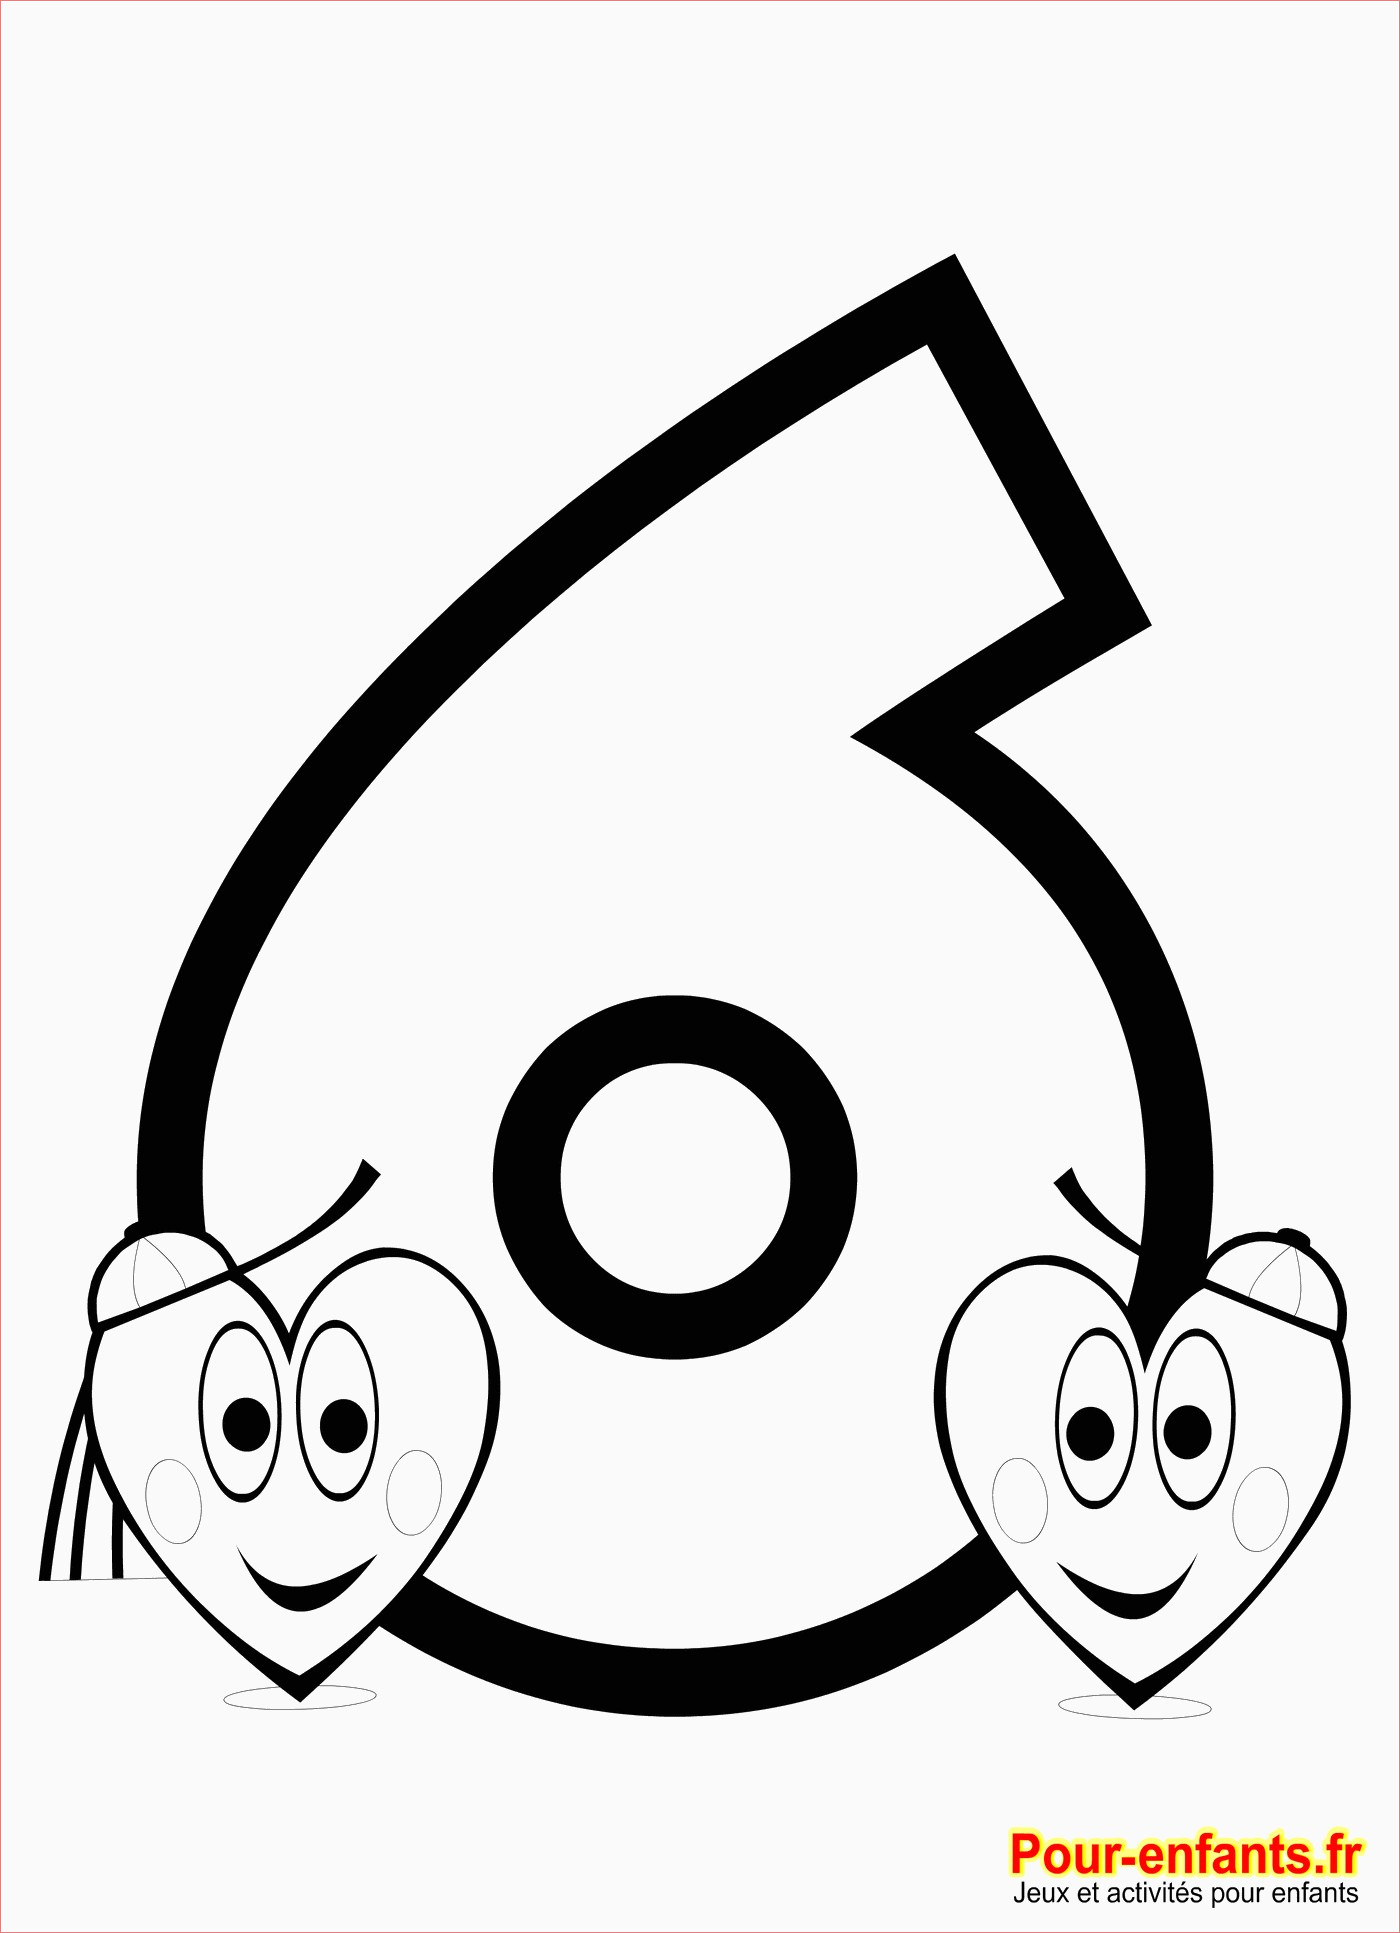 coloriage pour enfants de 3 ans coloriage chiffre 8 imprimer nombre 8 apprendre chiffres nombres